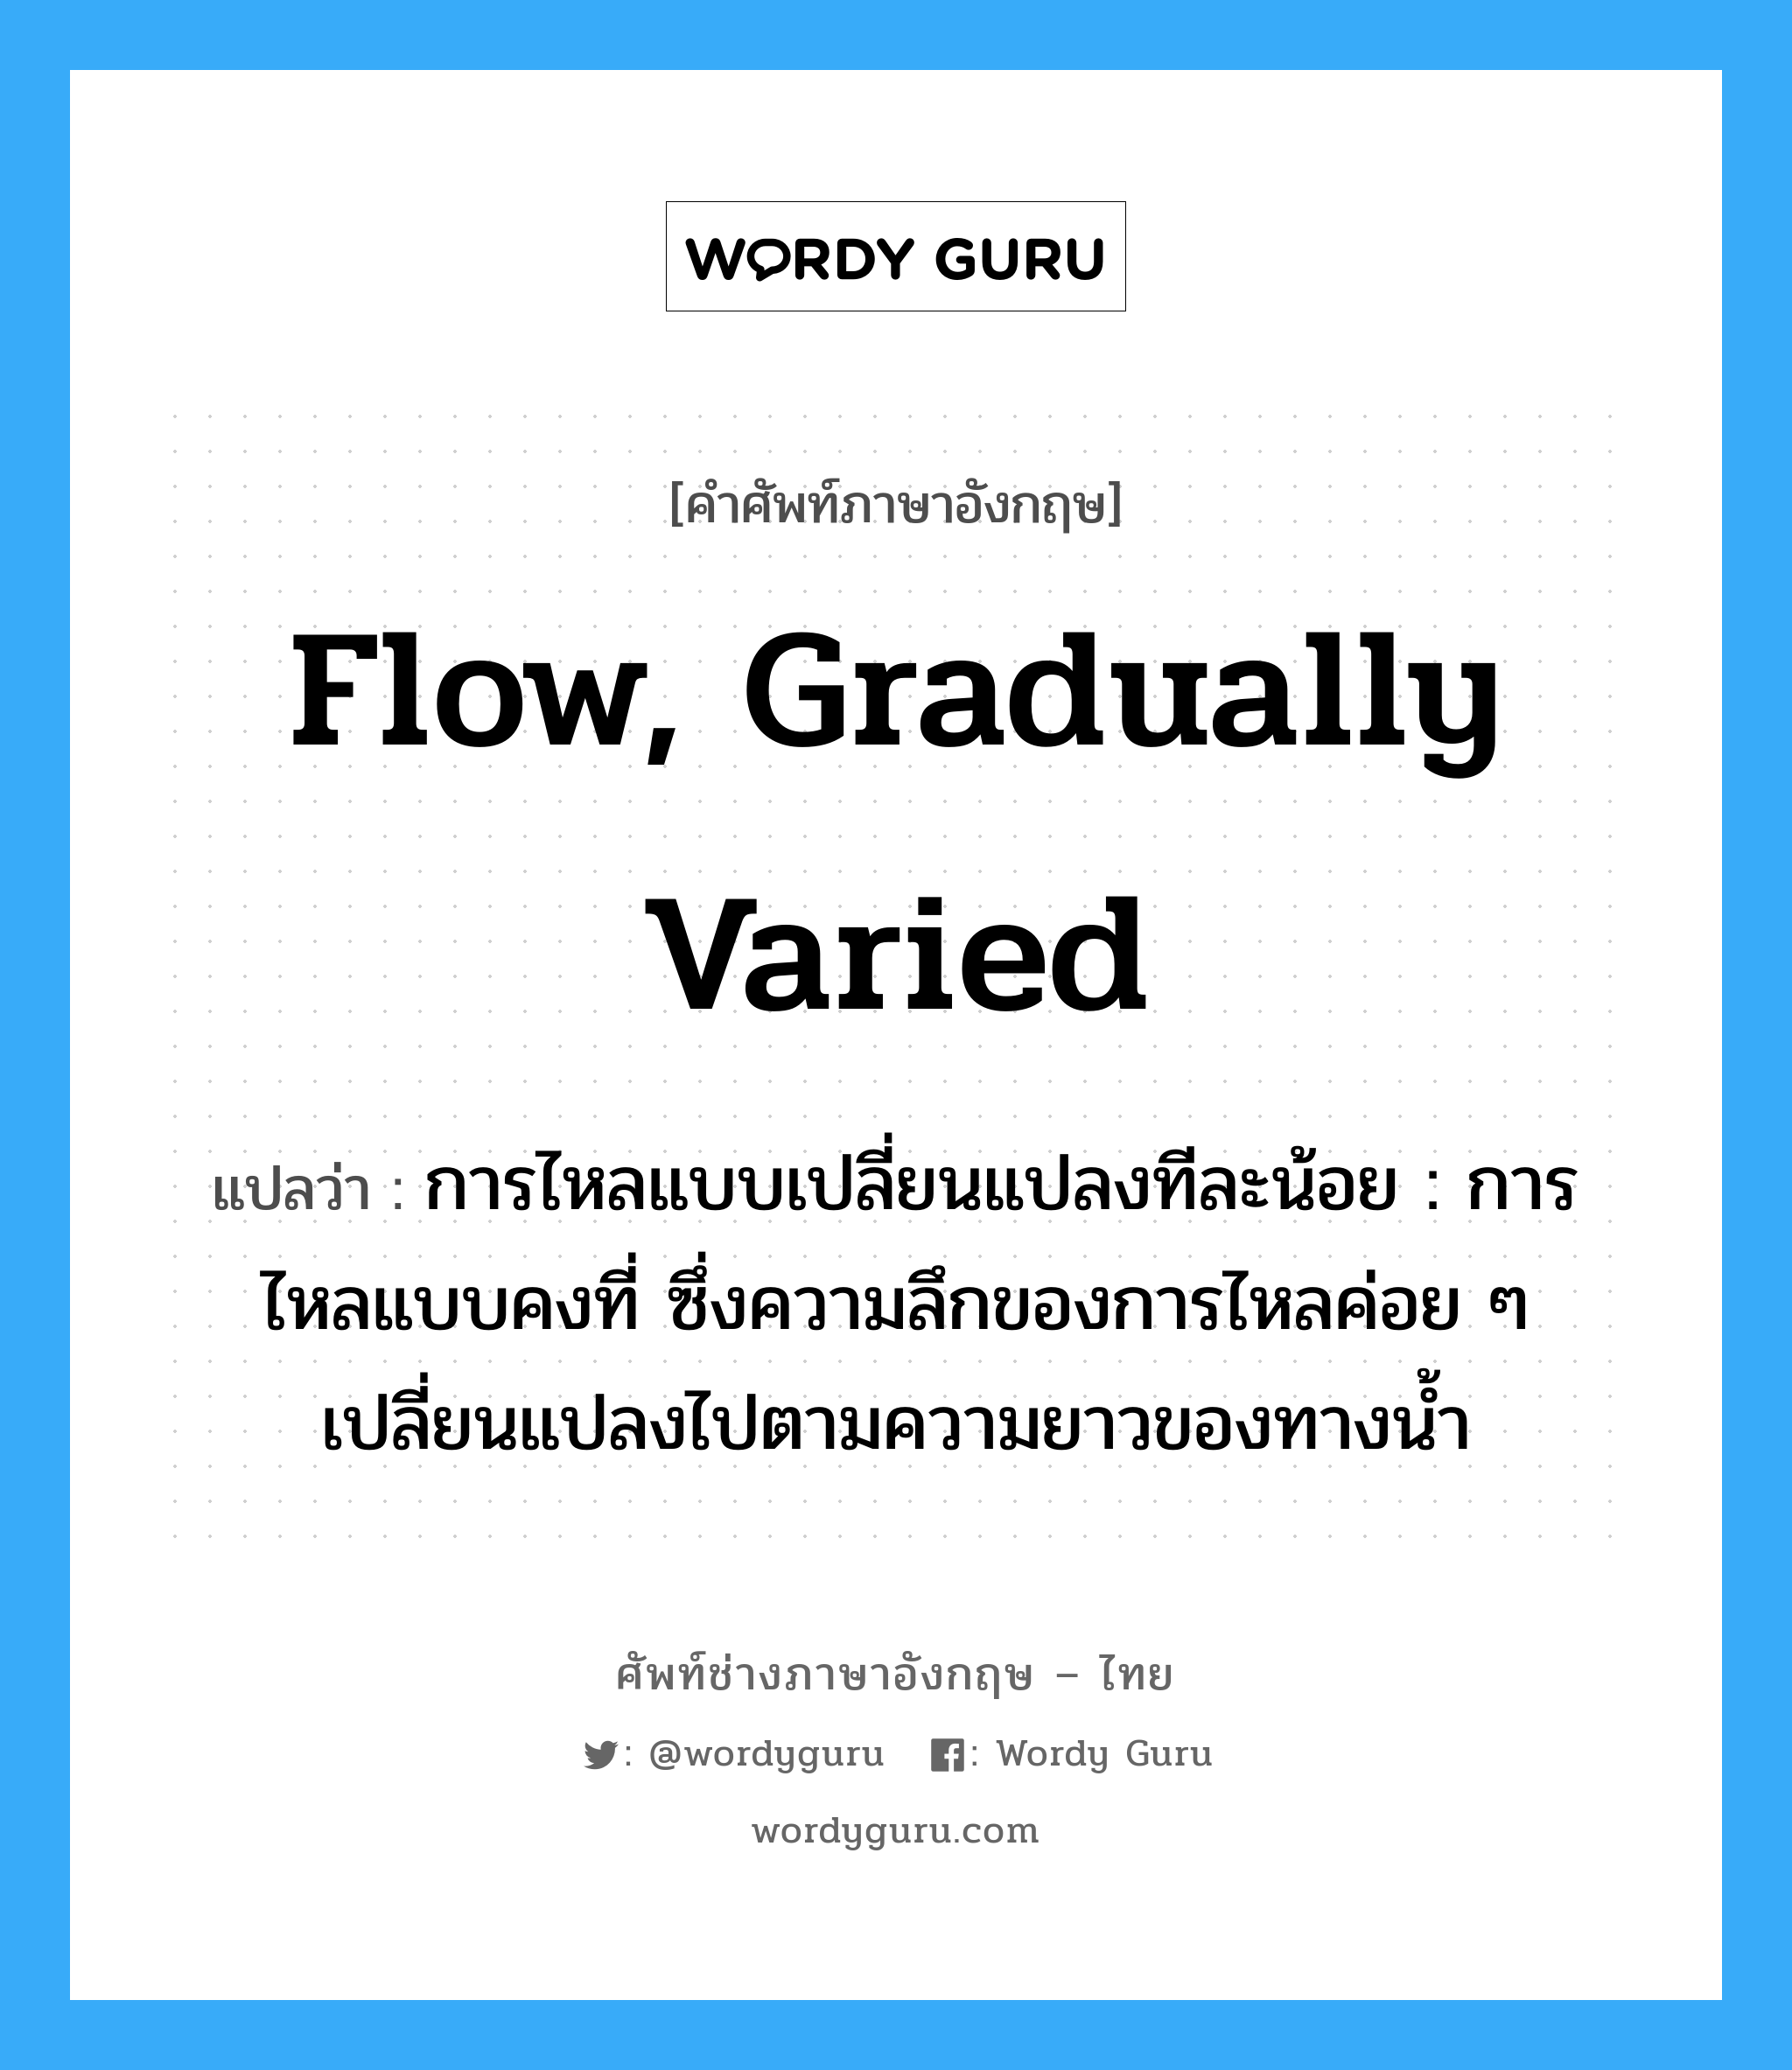 flow, gradually varied แปลว่า?, คำศัพท์ช่างภาษาอังกฤษ - ไทย flow, gradually varied คำศัพท์ภาษาอังกฤษ flow, gradually varied แปลว่า การไหลแบบเปลี่ยนแปลงทีละน้อย : การไหลแบบคงที่ ซึ่งความลึกของการไหลค่อย ๆ เปลี่ยนแปลงไปตามความยาวของทางน้ำ